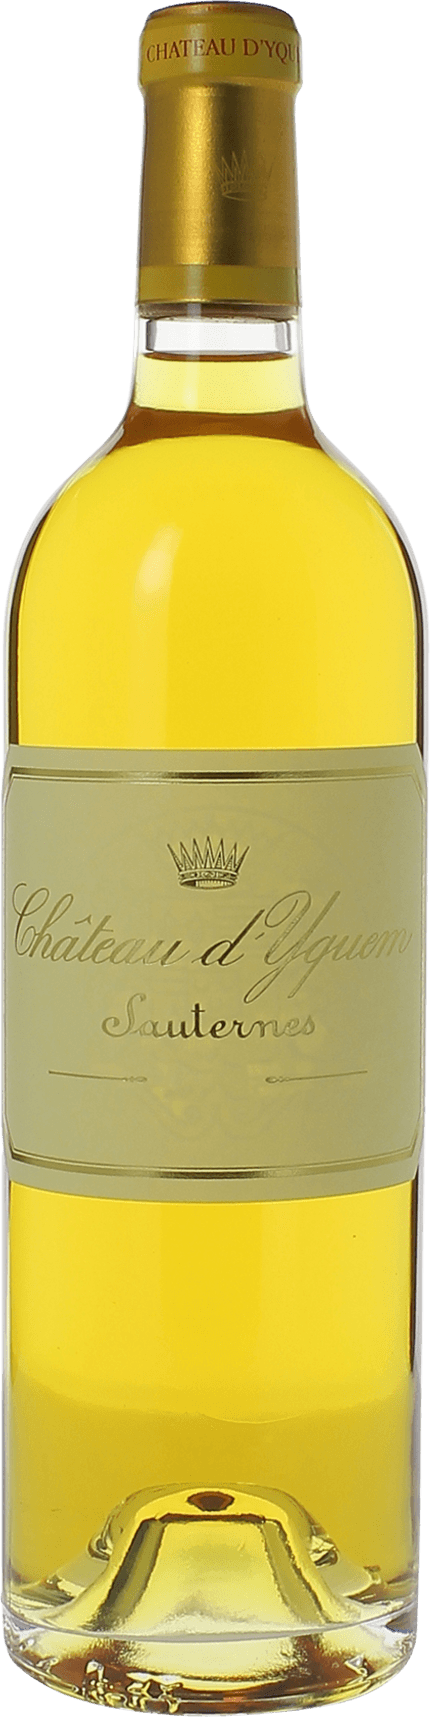 Yquem 1998 1er Grand cru class Sauternes, Bordeaux blanc